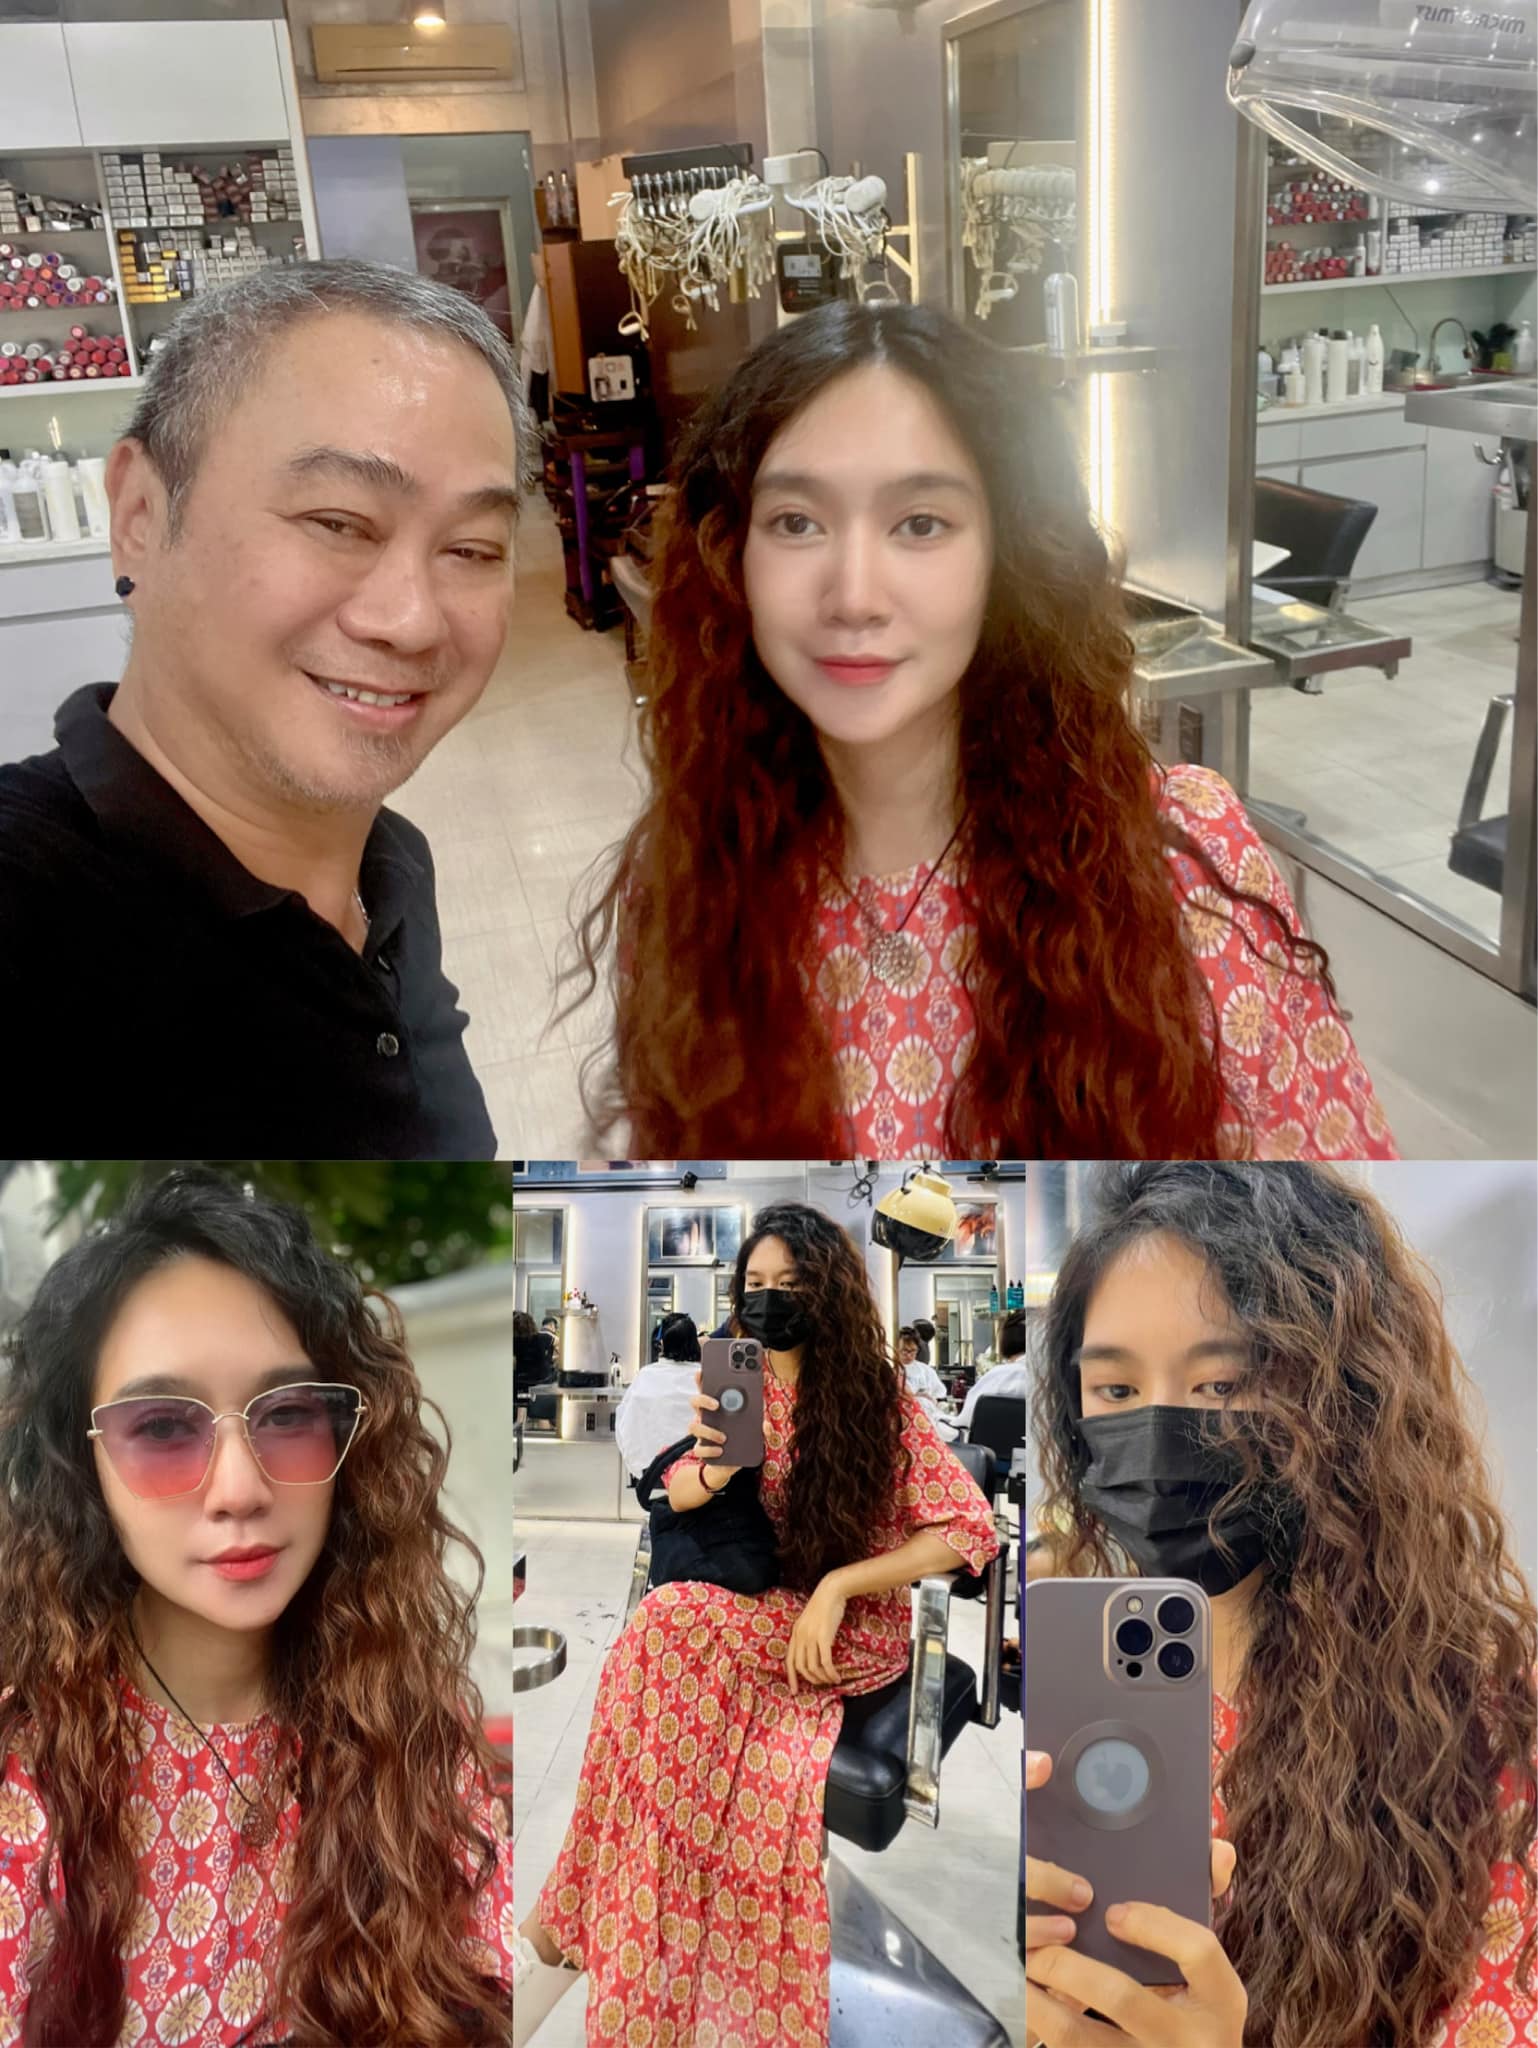 Bị chê kiểu tóc mới trông già và kém sắc, vợ Lý Hải đáp trả thế nào mà netizen câm nín? - ảnh 2